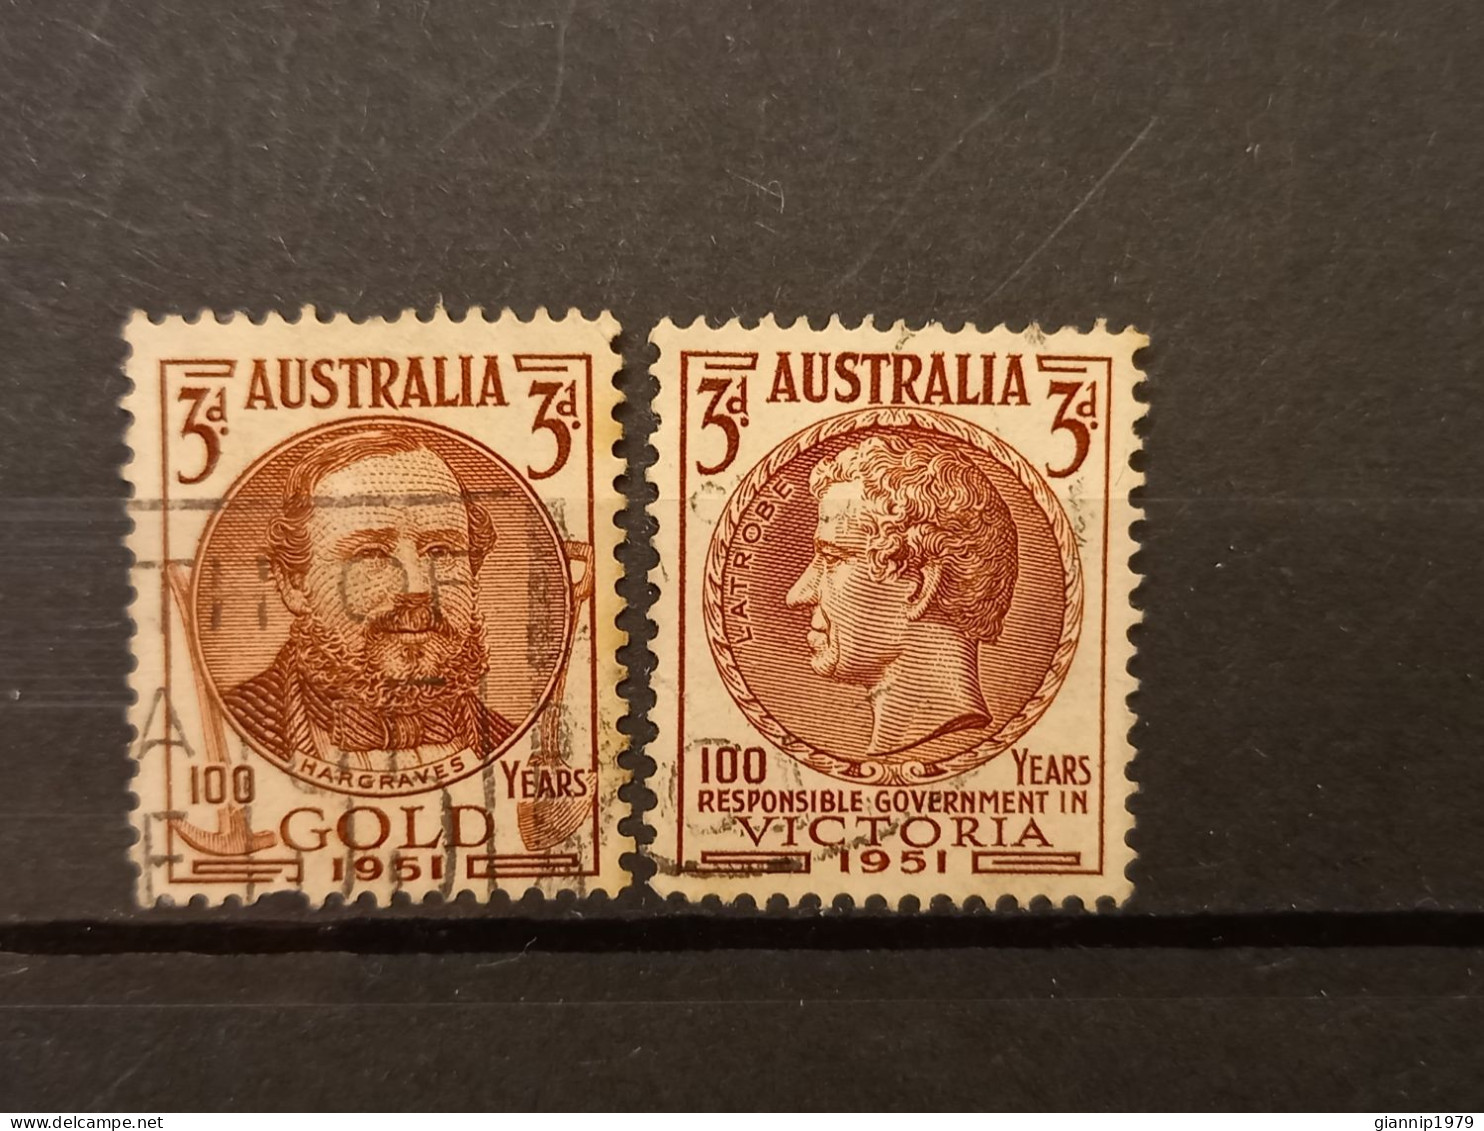 FRANCOBOLLI STAMPS AUSTRALIA AUSTRALIAN 1951 USED SERIE COMPLETE COMPLETA 100 ANNI ANNIVERSARY ORO VICTORIA OBLITERE' - Usati